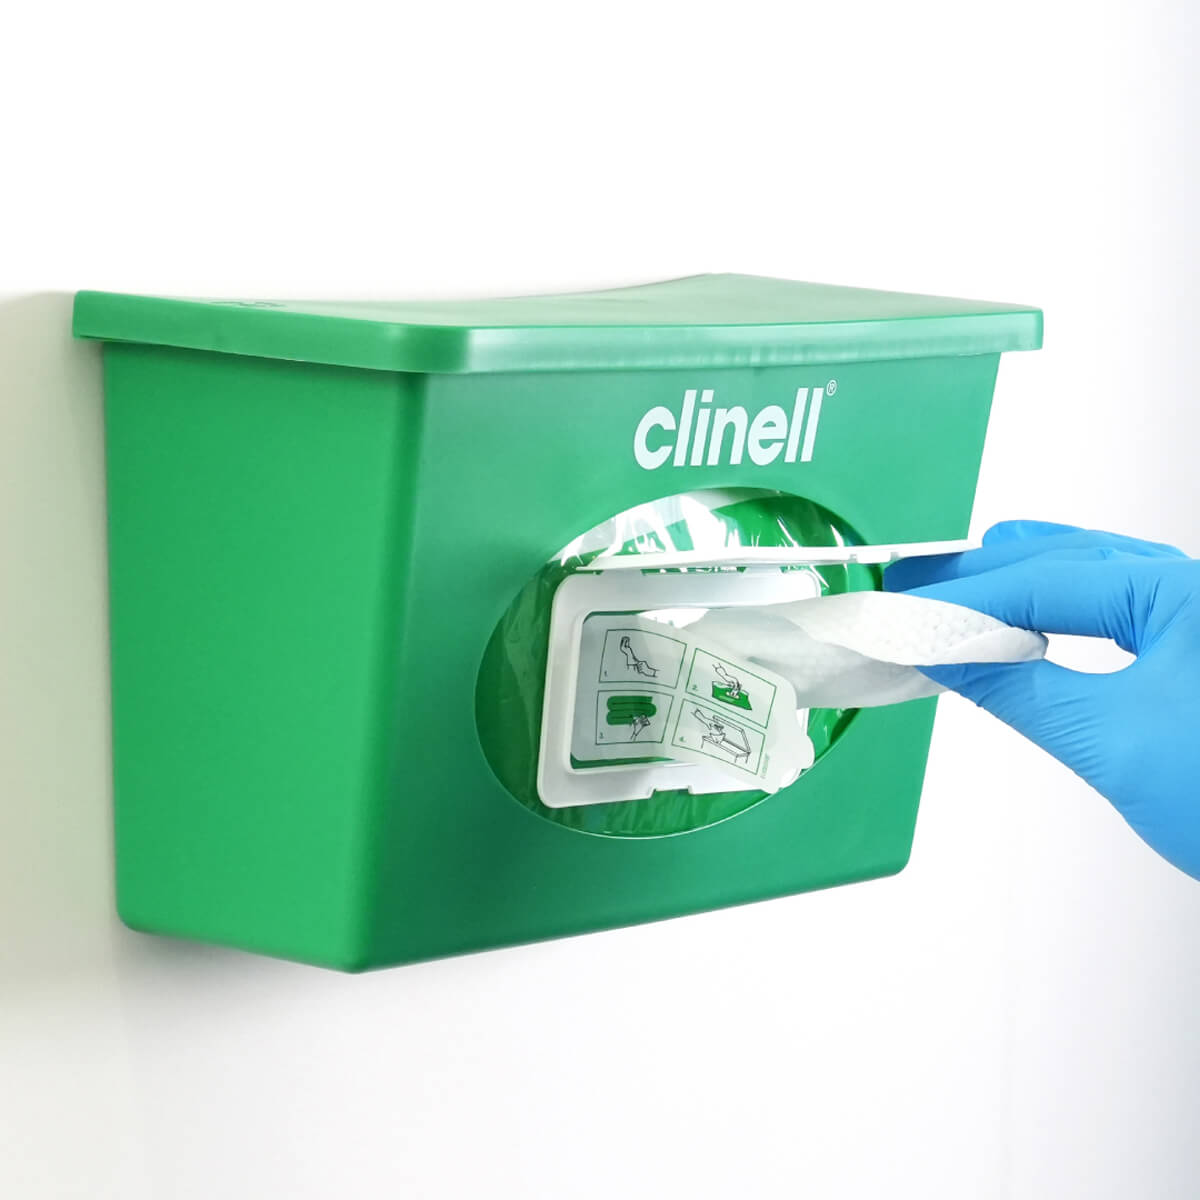 Clinell-Dispenser.jpg